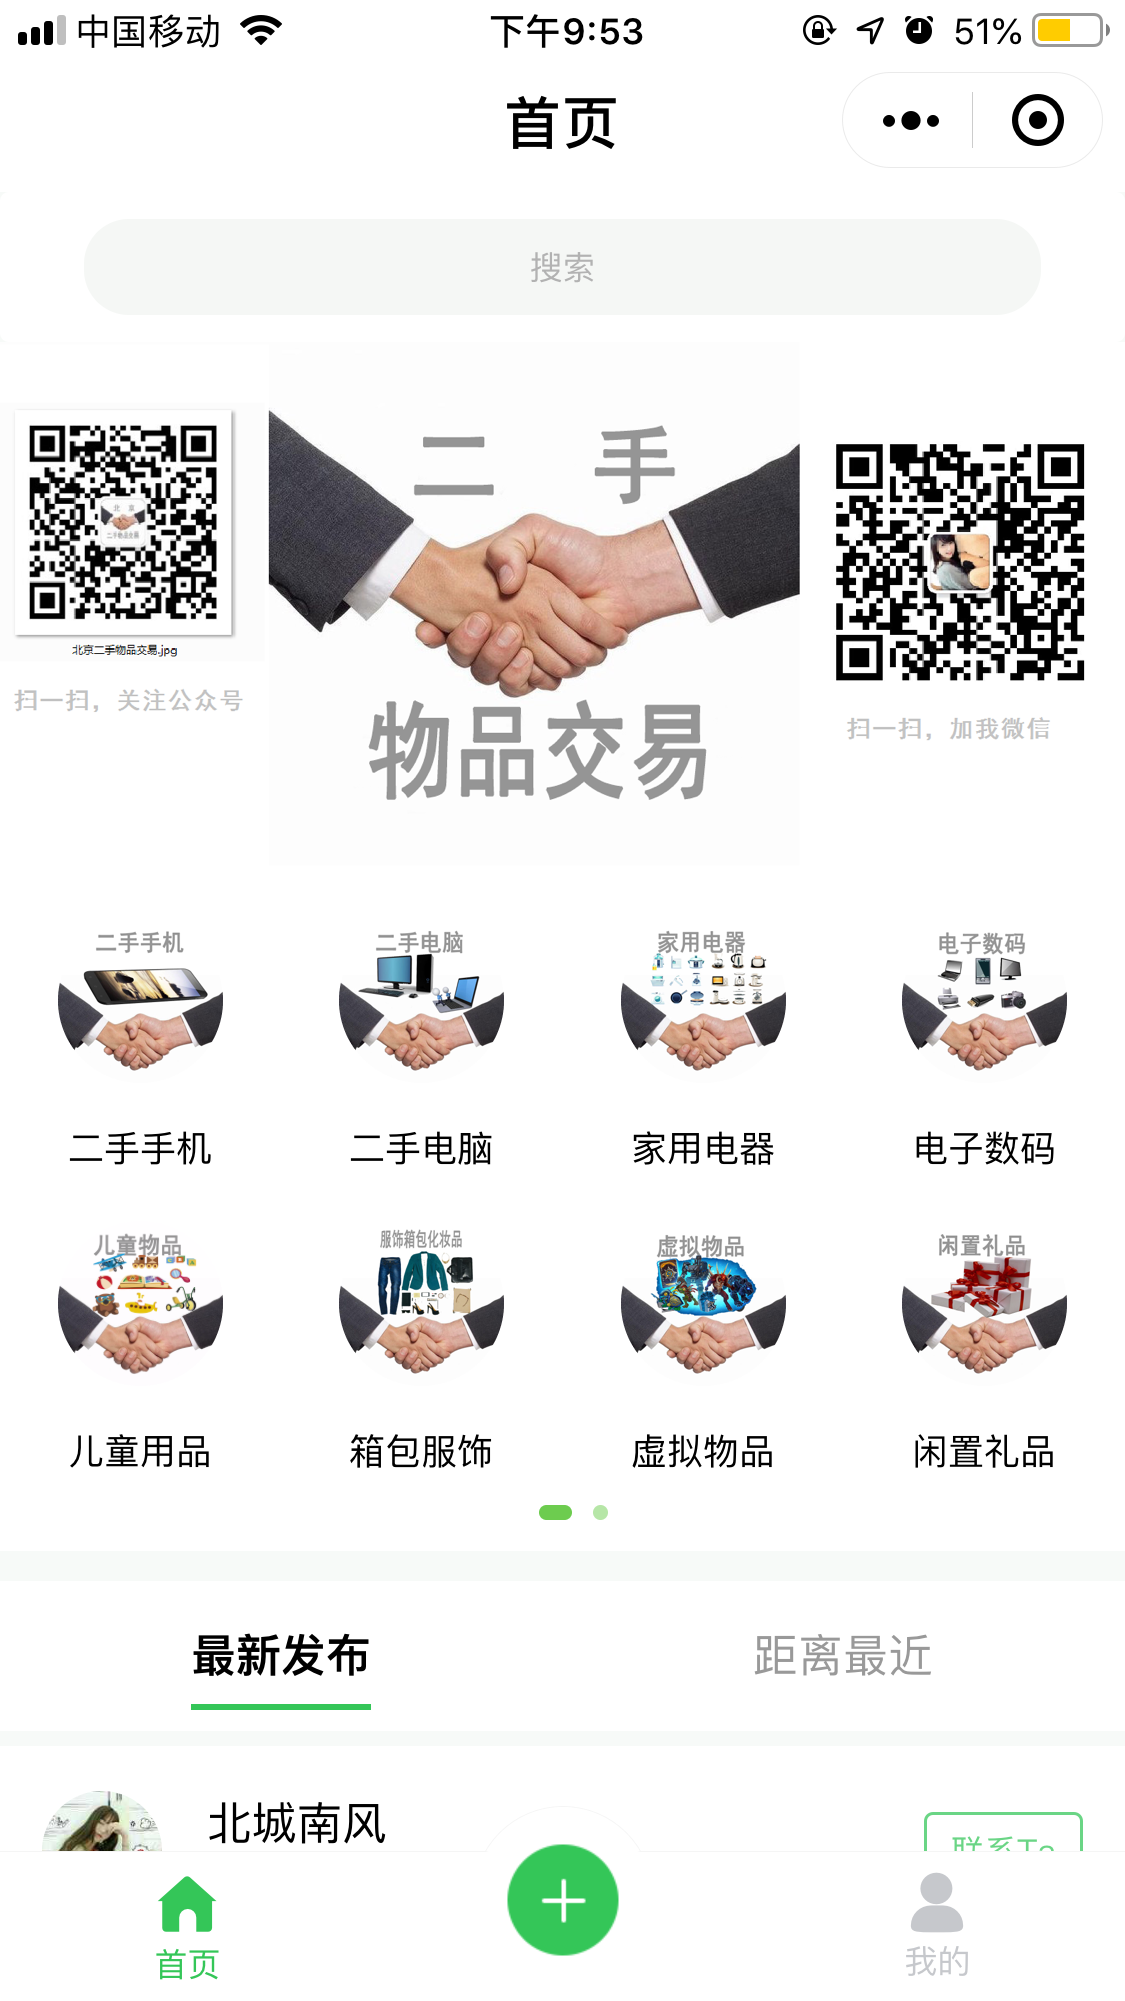 北京二手市场_北京二手市场小程序_北京二手市场微信小程序